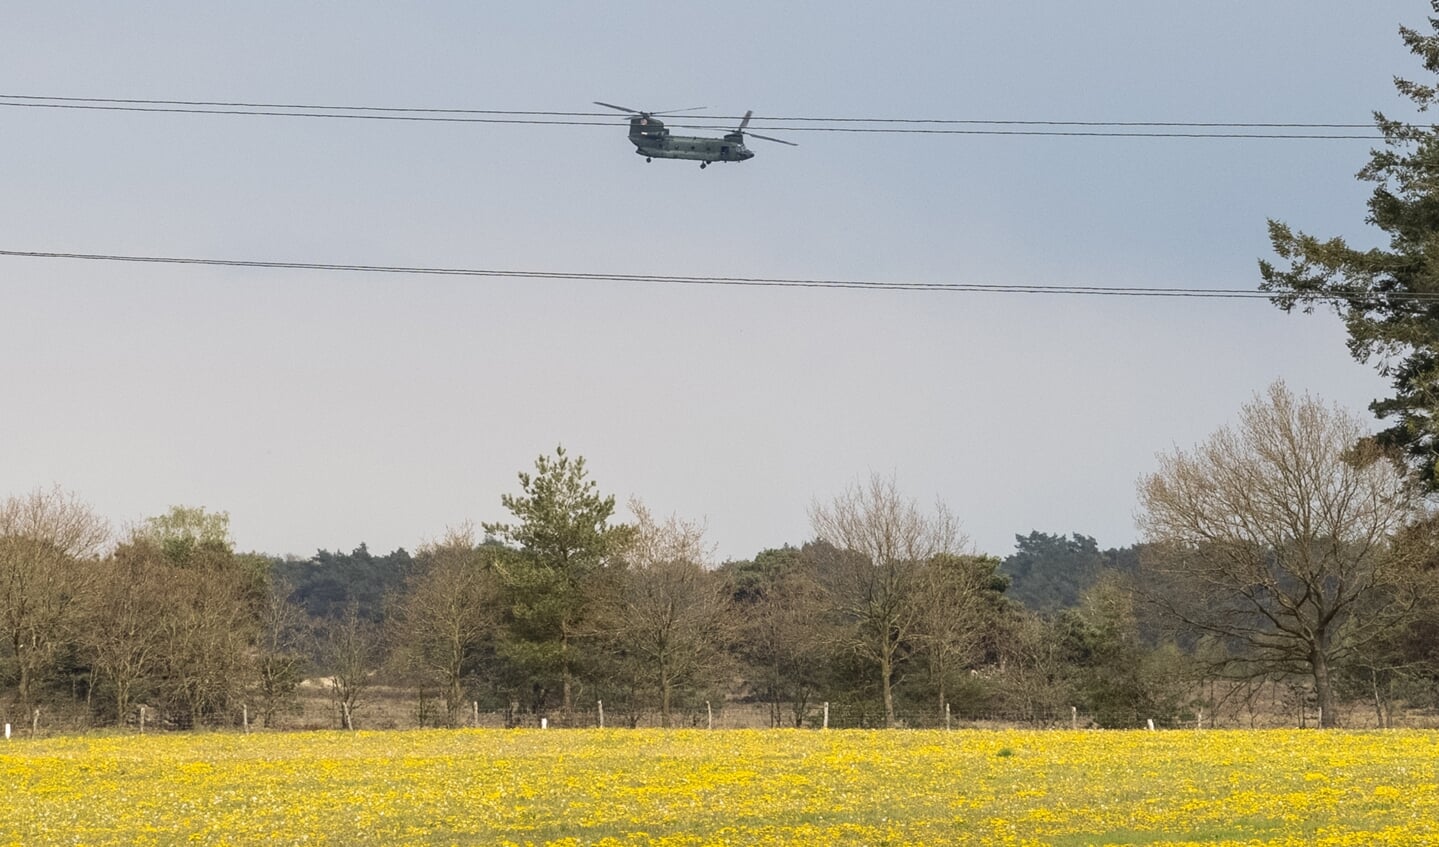 De bemanning van de gestrande helikopter werd door collega's opgehaald en teruggevlogen naar Gilze Rijen